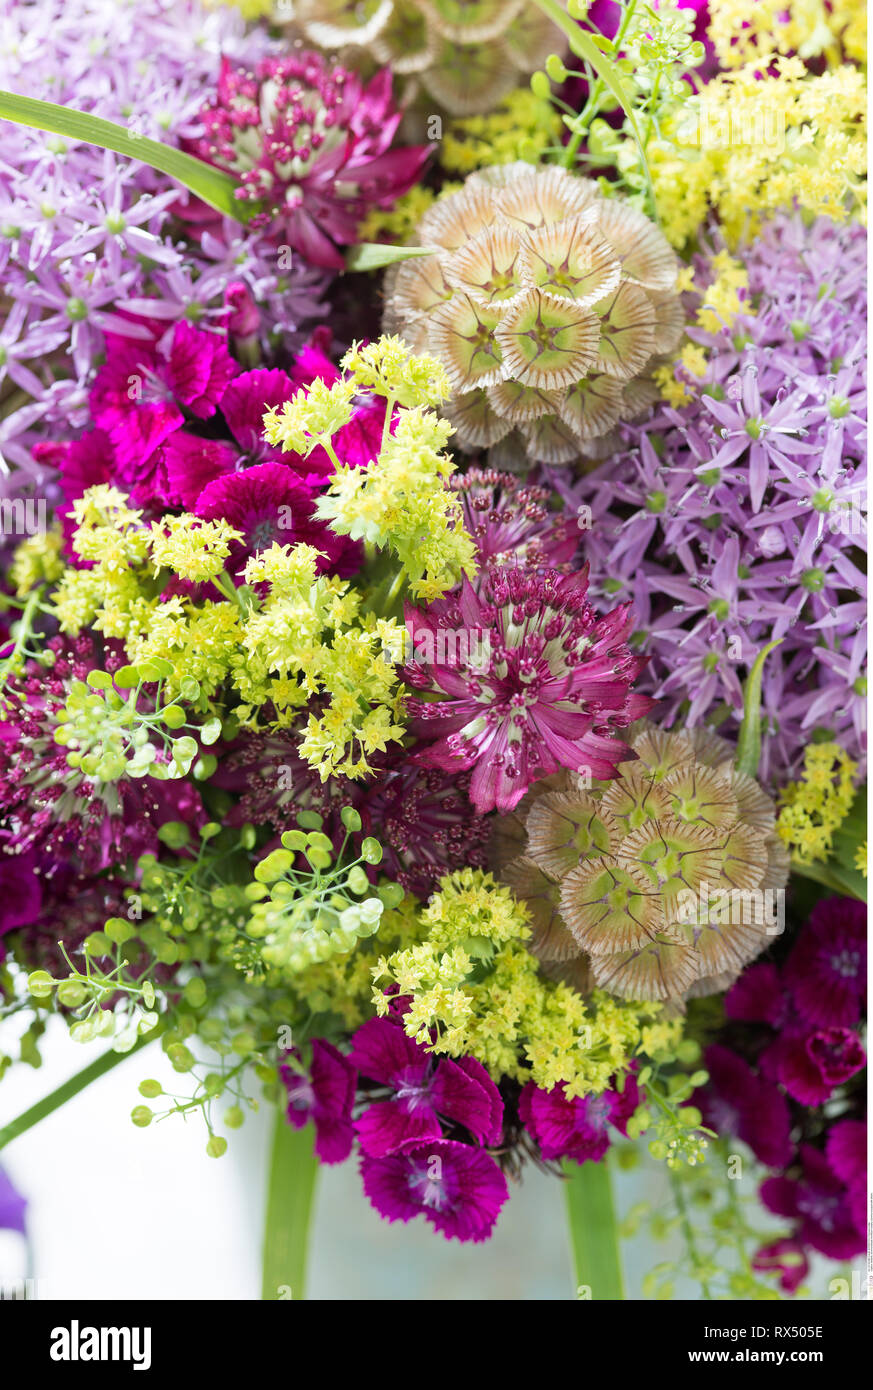 La botanica, estate bouquet con allium, attenzione! Per Greetingcard-Use / Postcard-Use nei Paesi di lingua tedesca talune restrizioni possono applicare Foto Stock